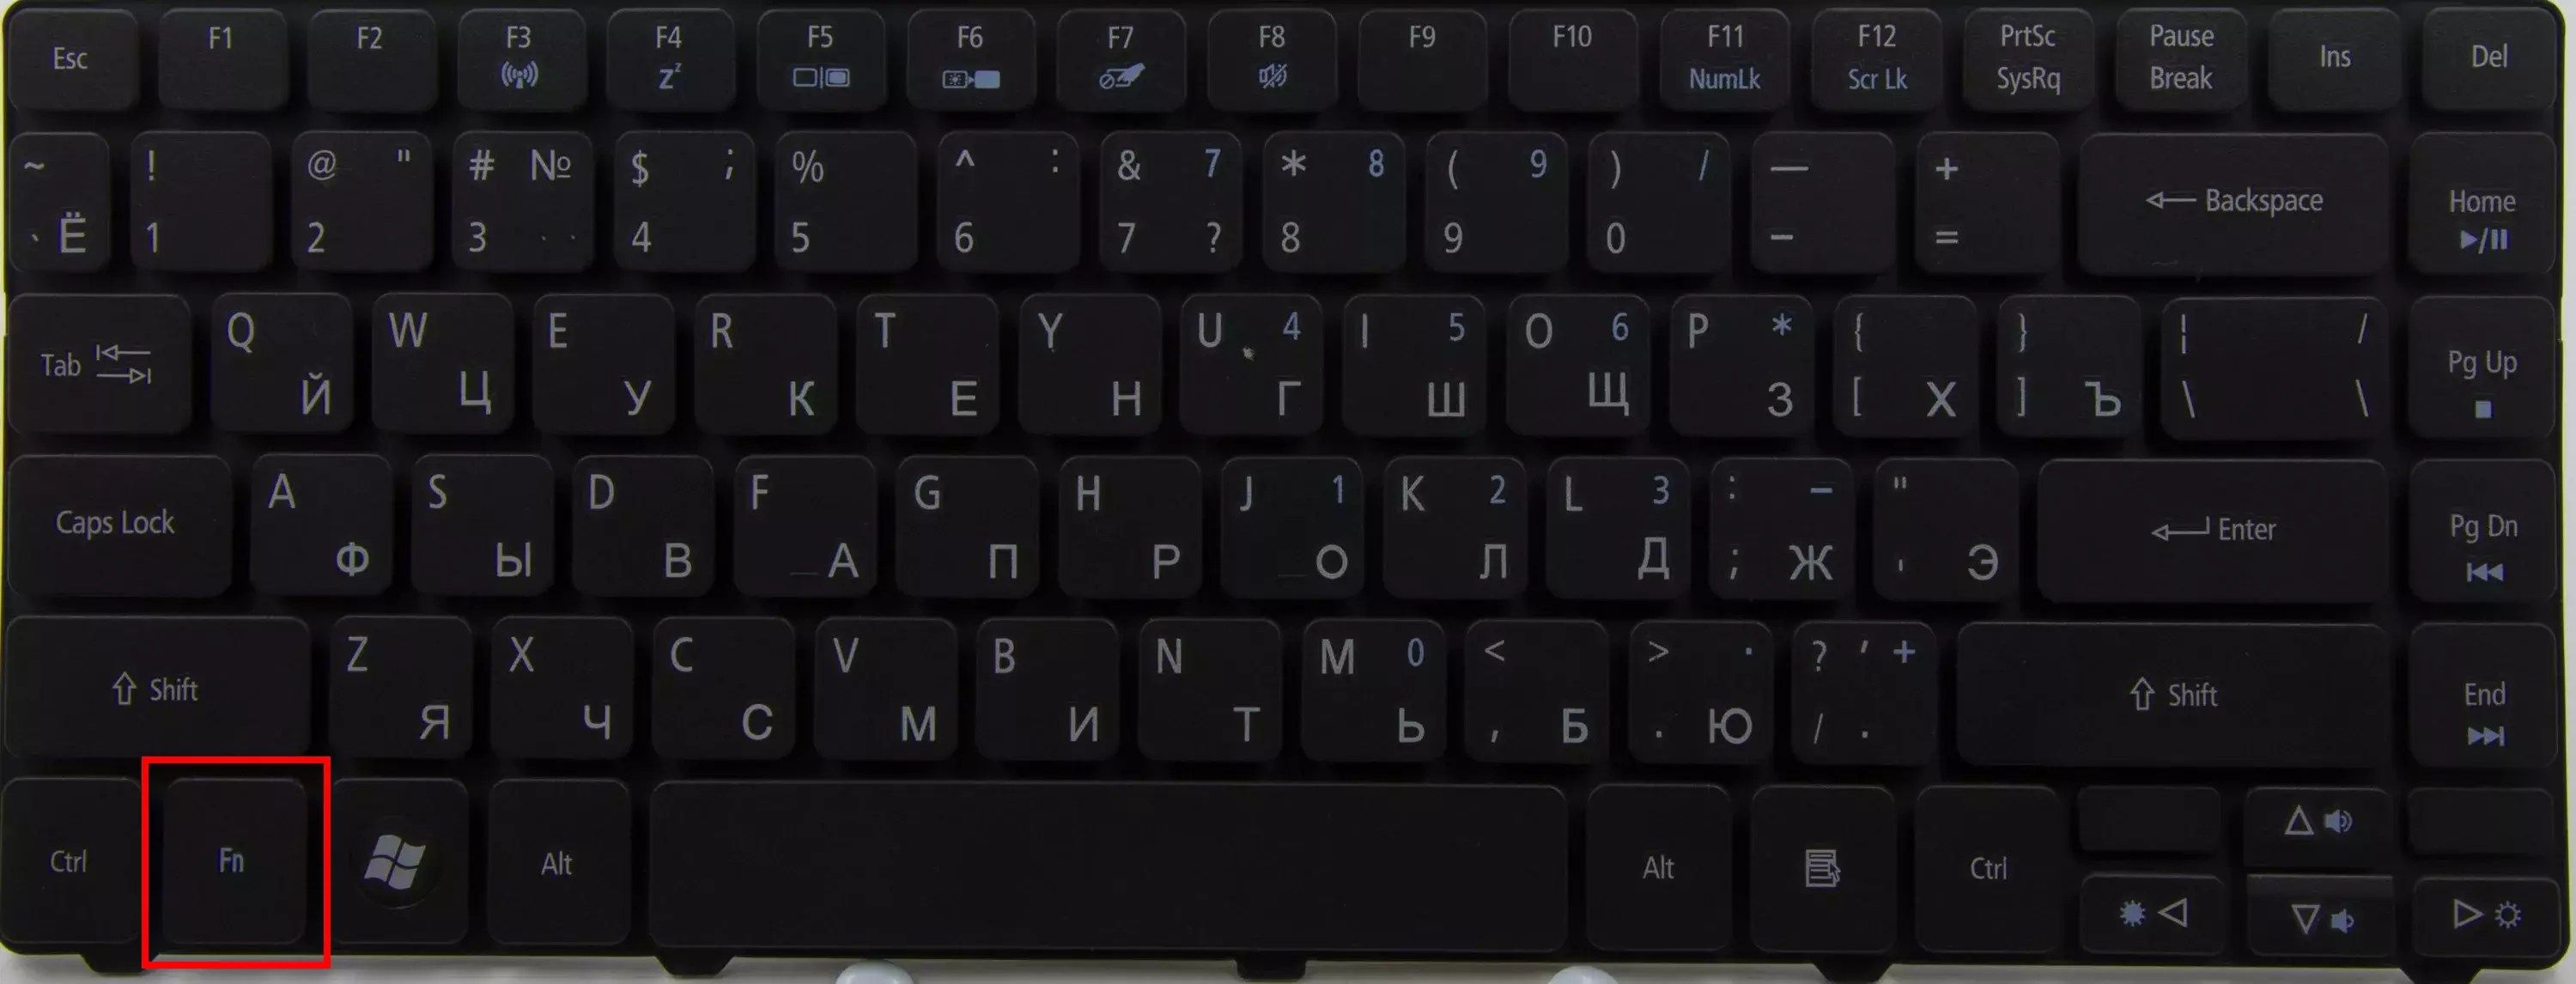 Cara menghidupkan keyboard laptop